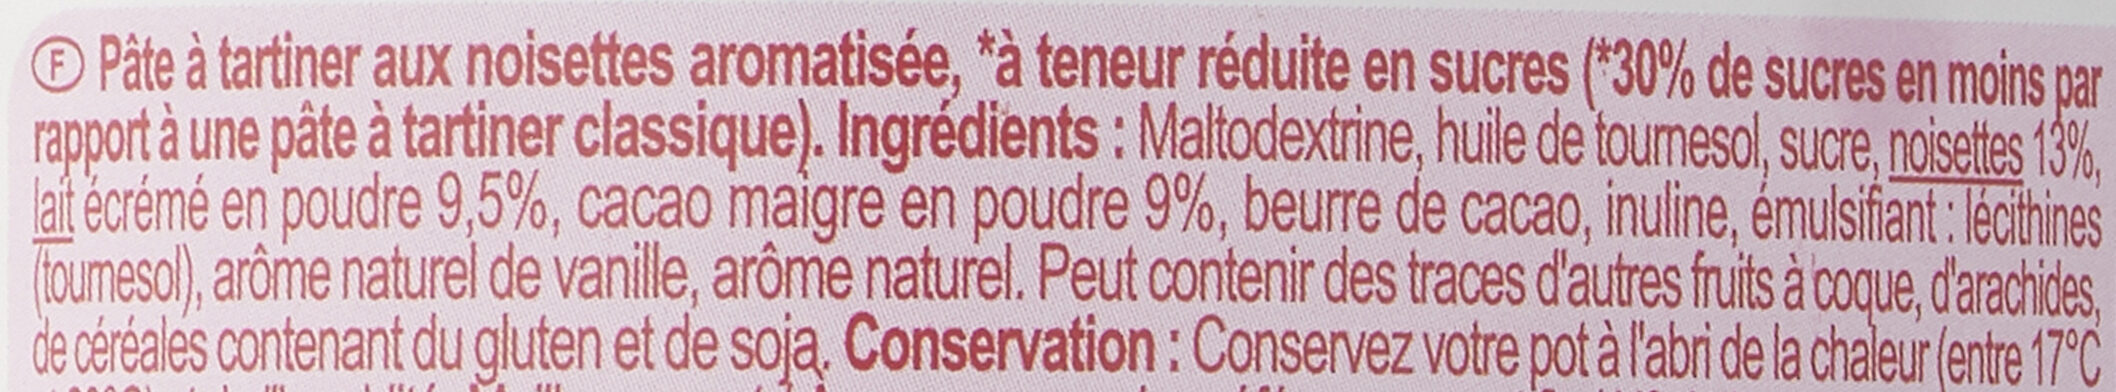 Kaonuts - Ingredients - fr